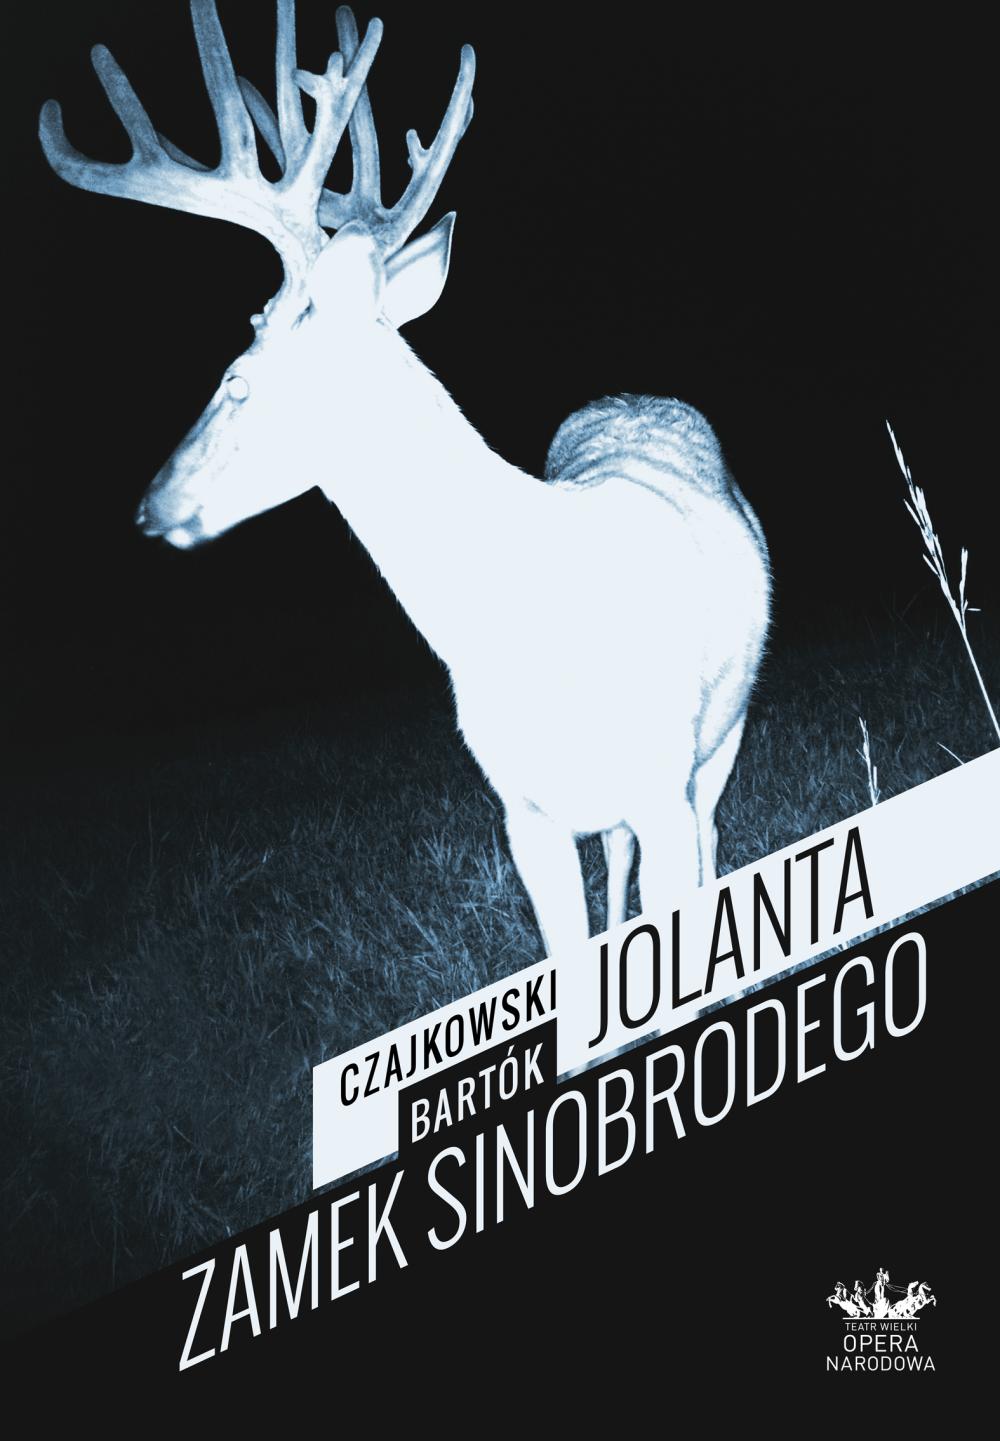 Plakat „Jolanta / Zamek Sinobrodego”, Piotr Czajkowski / Béla Bartók premiera 2013-12-13